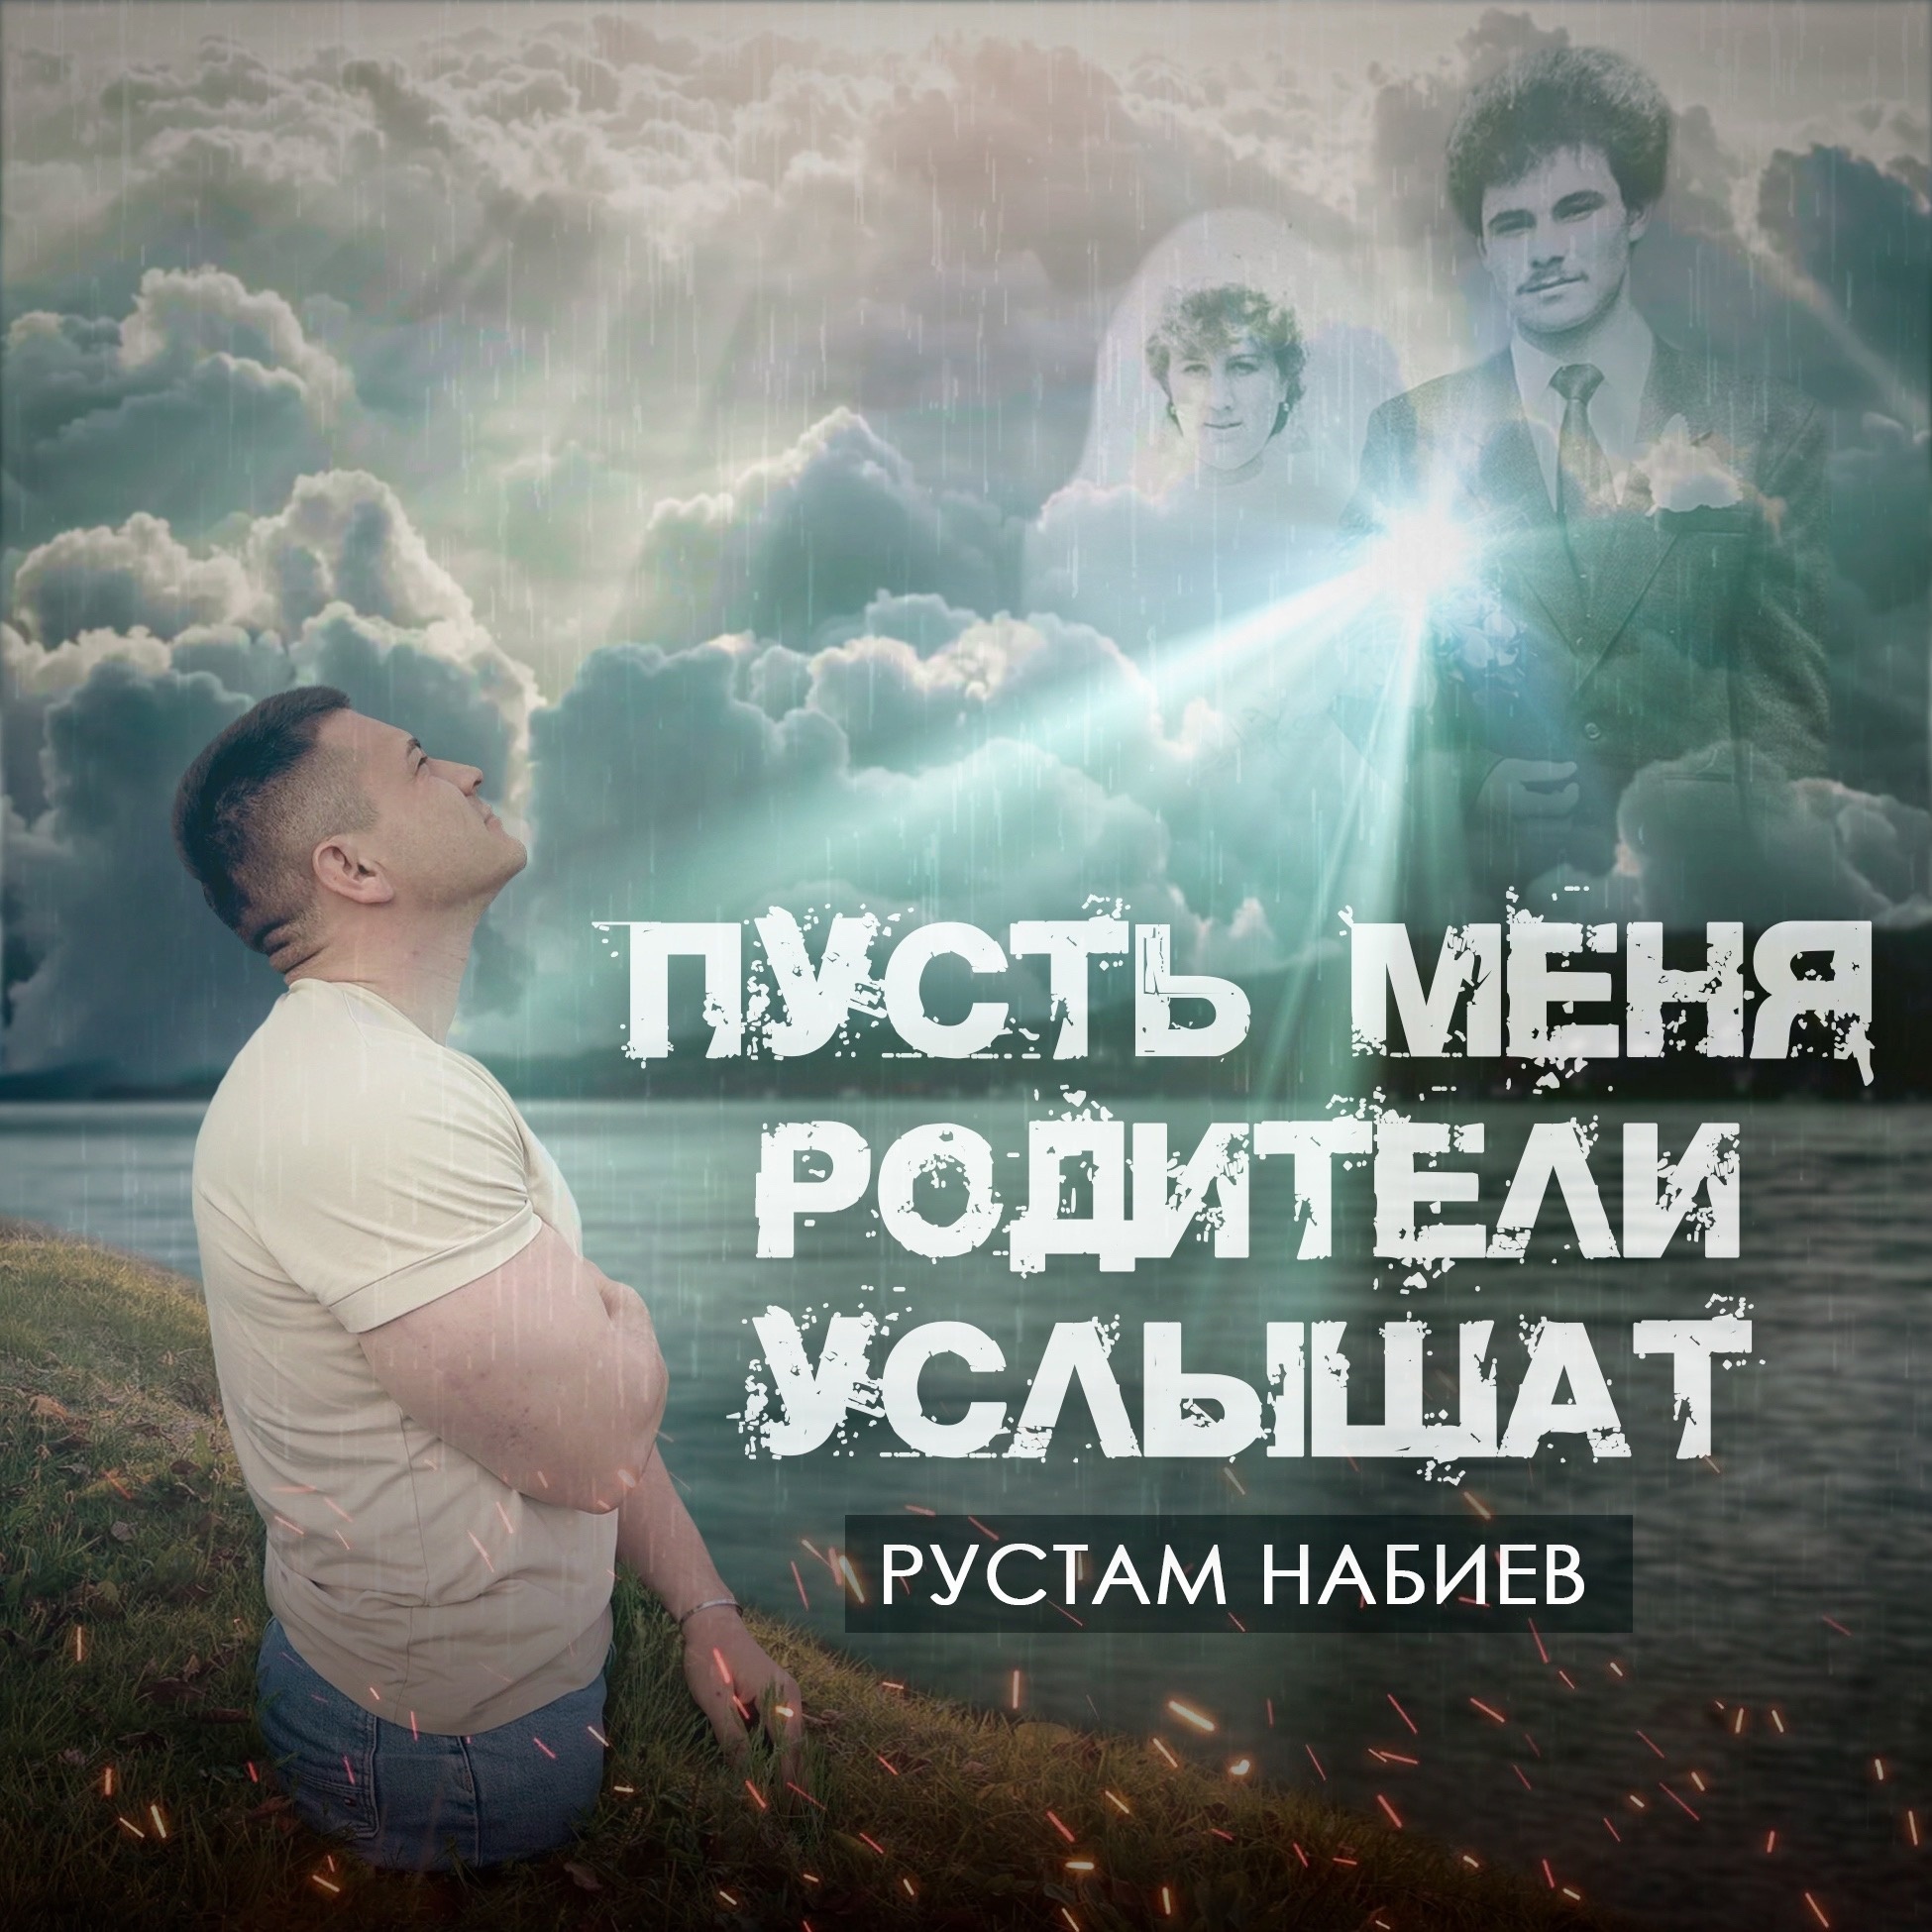 Рустам Набиев выпустил песню, которую посвятил своим родителям